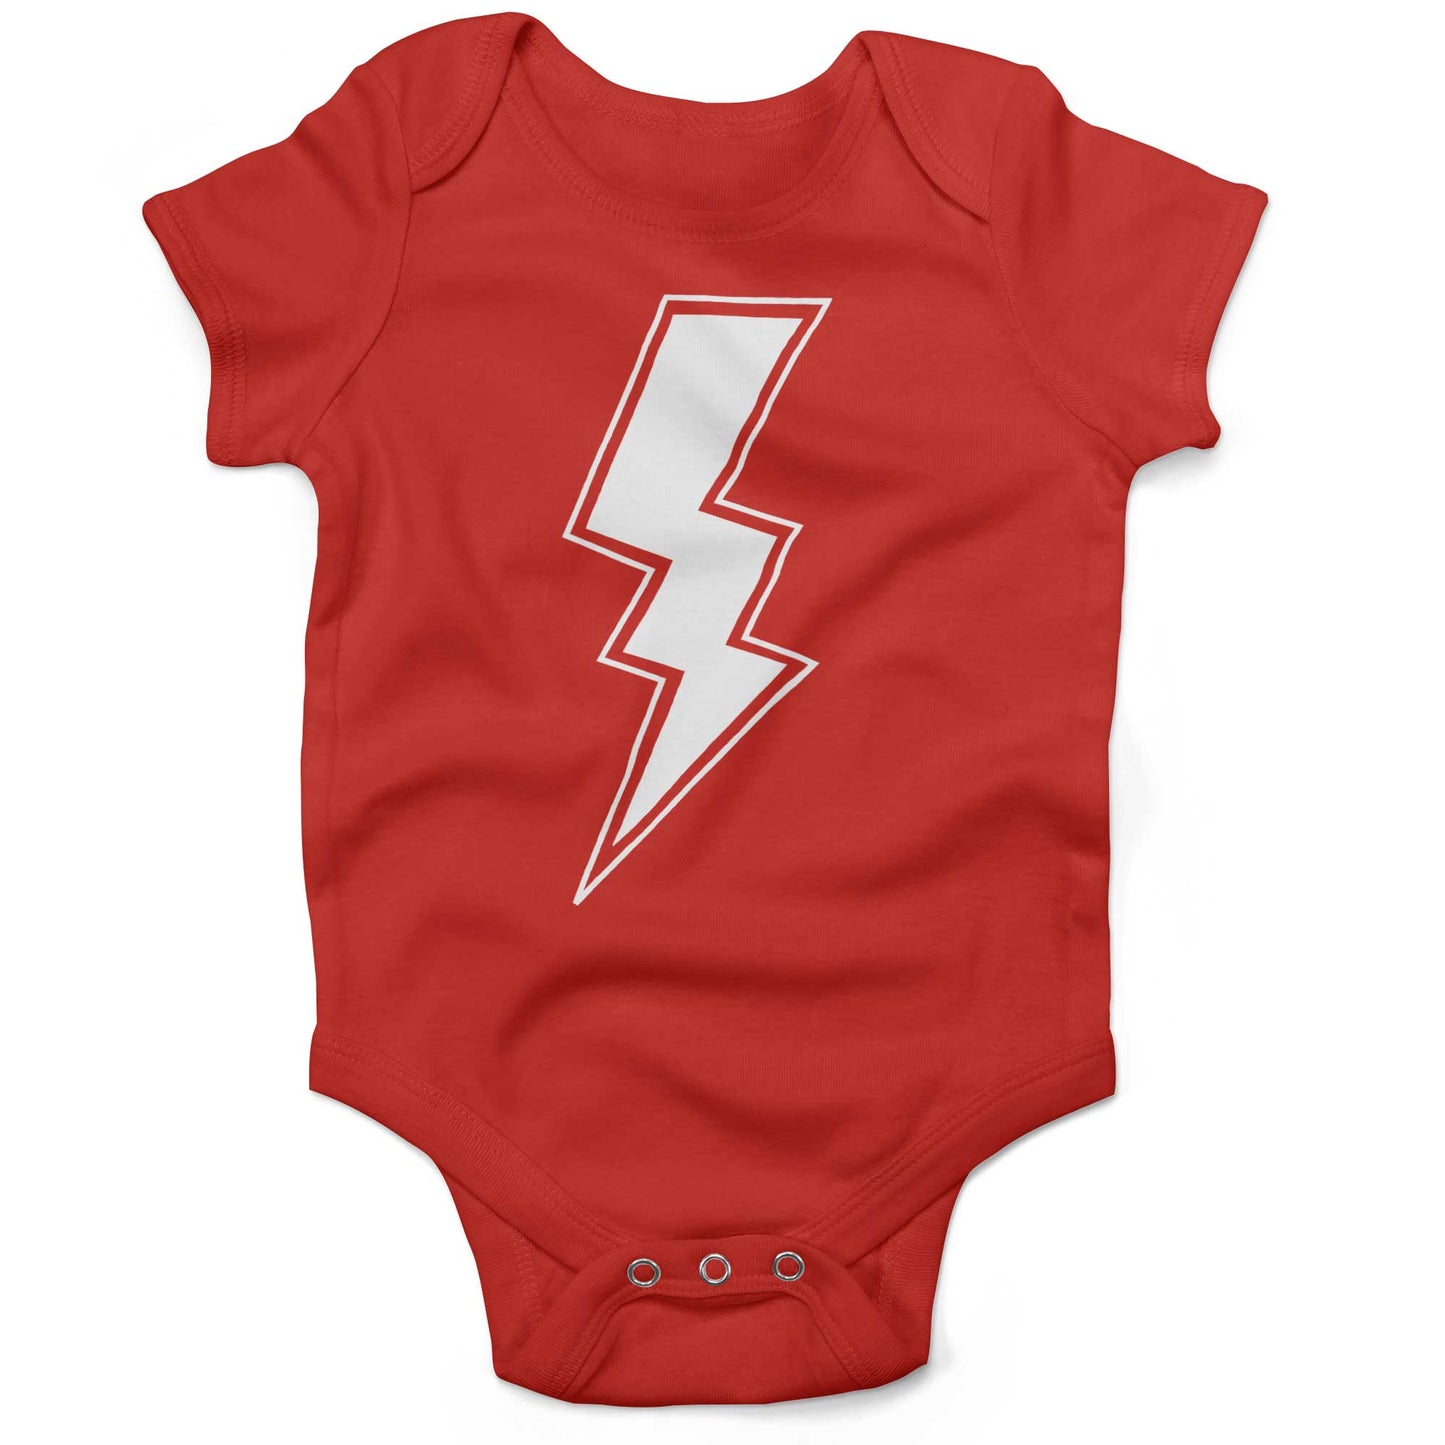 Giant Lightning Bolt Infant Bodysuit or Raglan Baby Tee-Organic Red-3-6 months